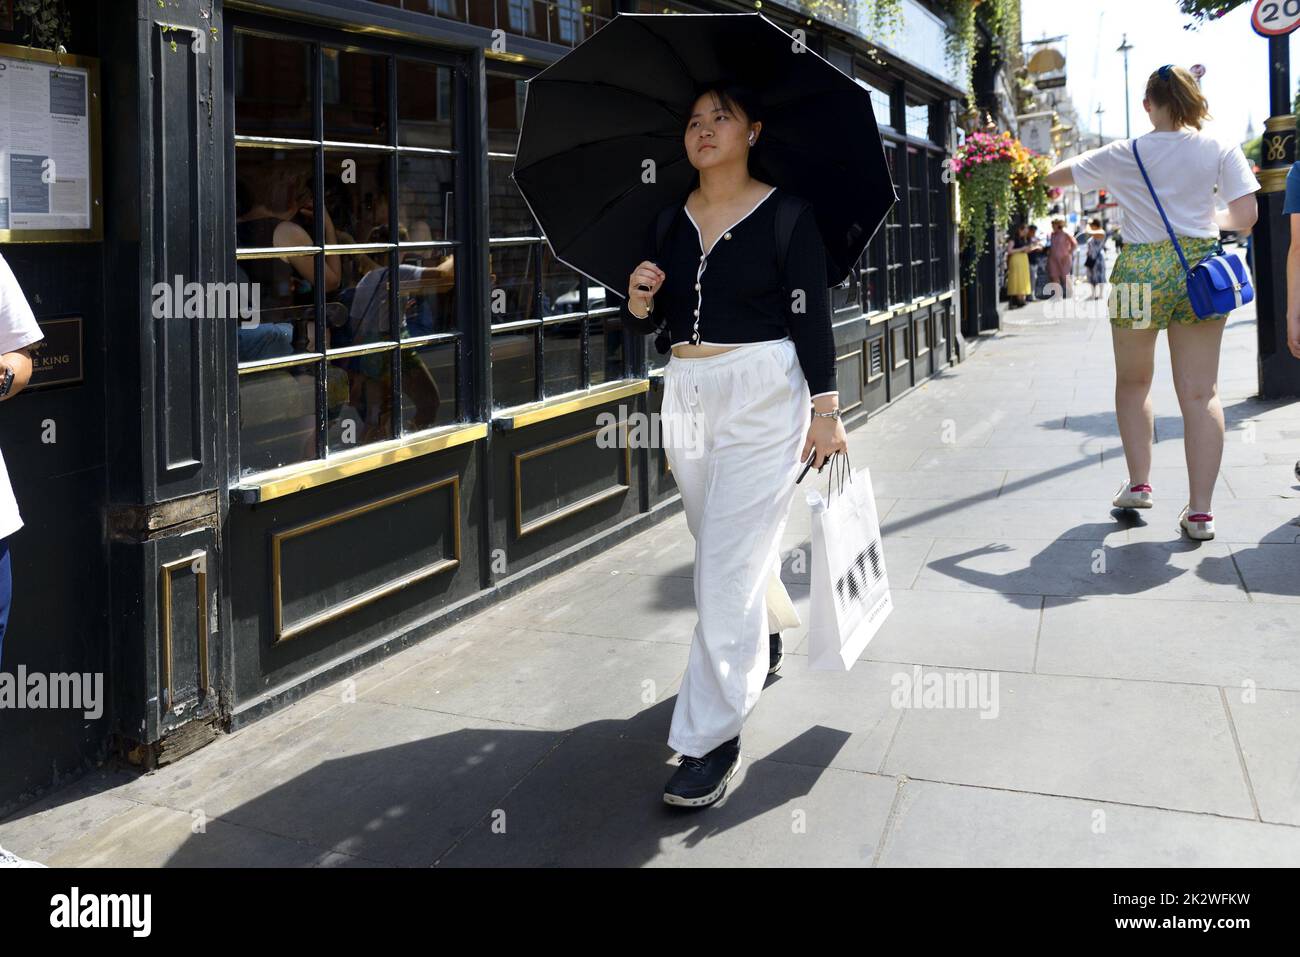 Londra, Inghilterra, Regno Unito. Donna asiatica con unbrella in una calda giornata di sole Foto Stock